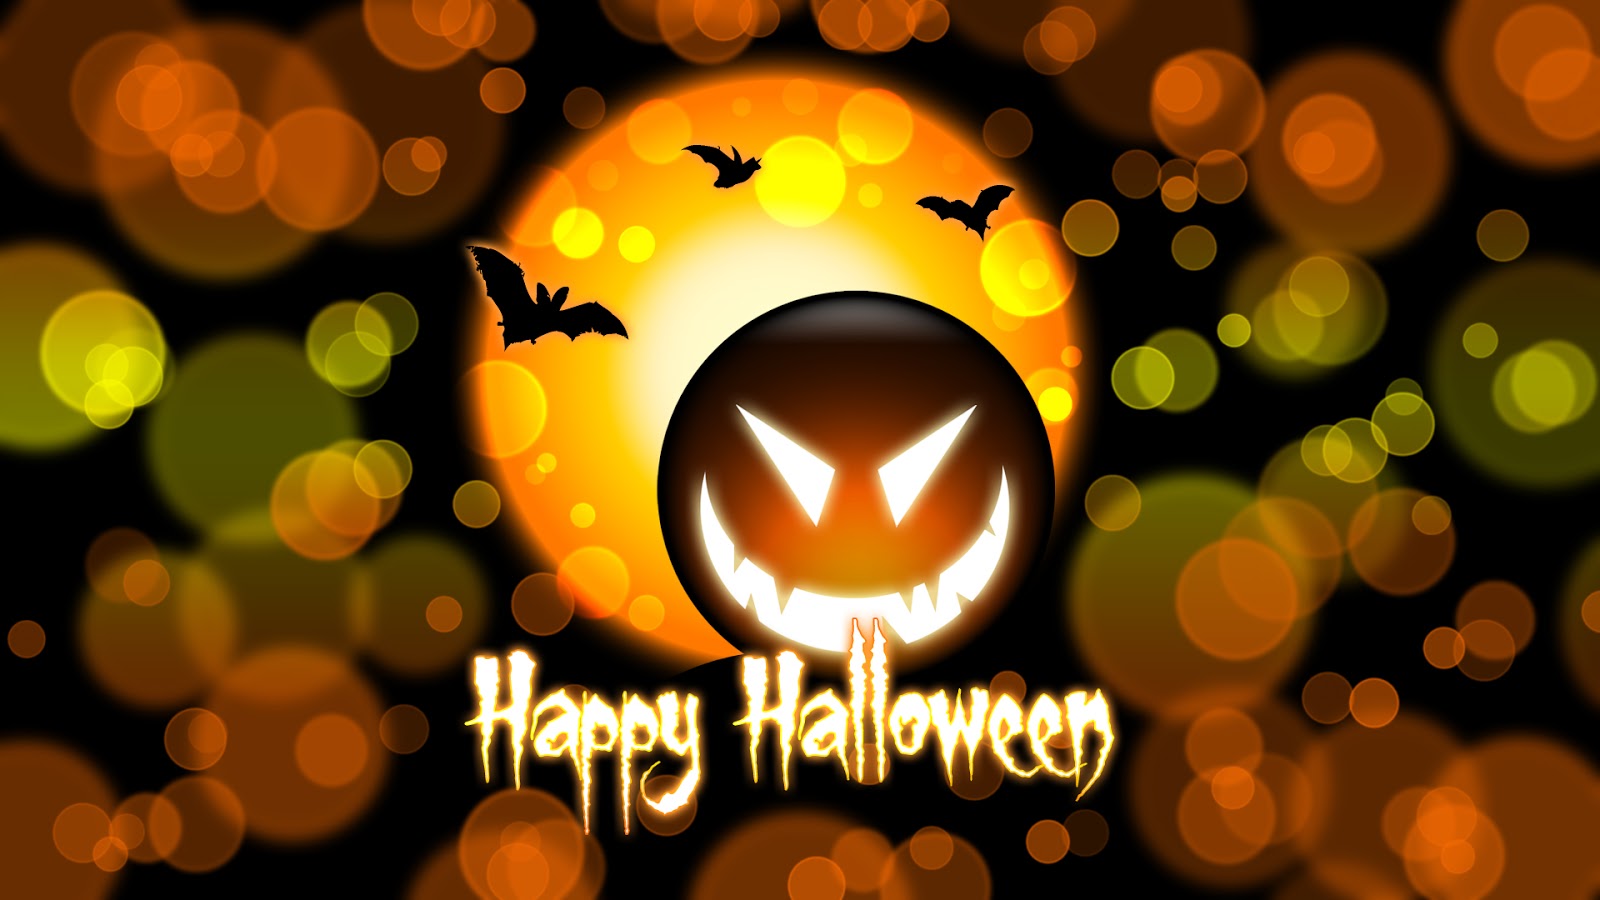 http://2.bp.blogspot.com/-qKX97IvC-8Y/UHbonpEG9WI/AAAAAAAAHQw/s_FMqkMsvAA/s1600/Halloween+Wallpaper+004.jpg